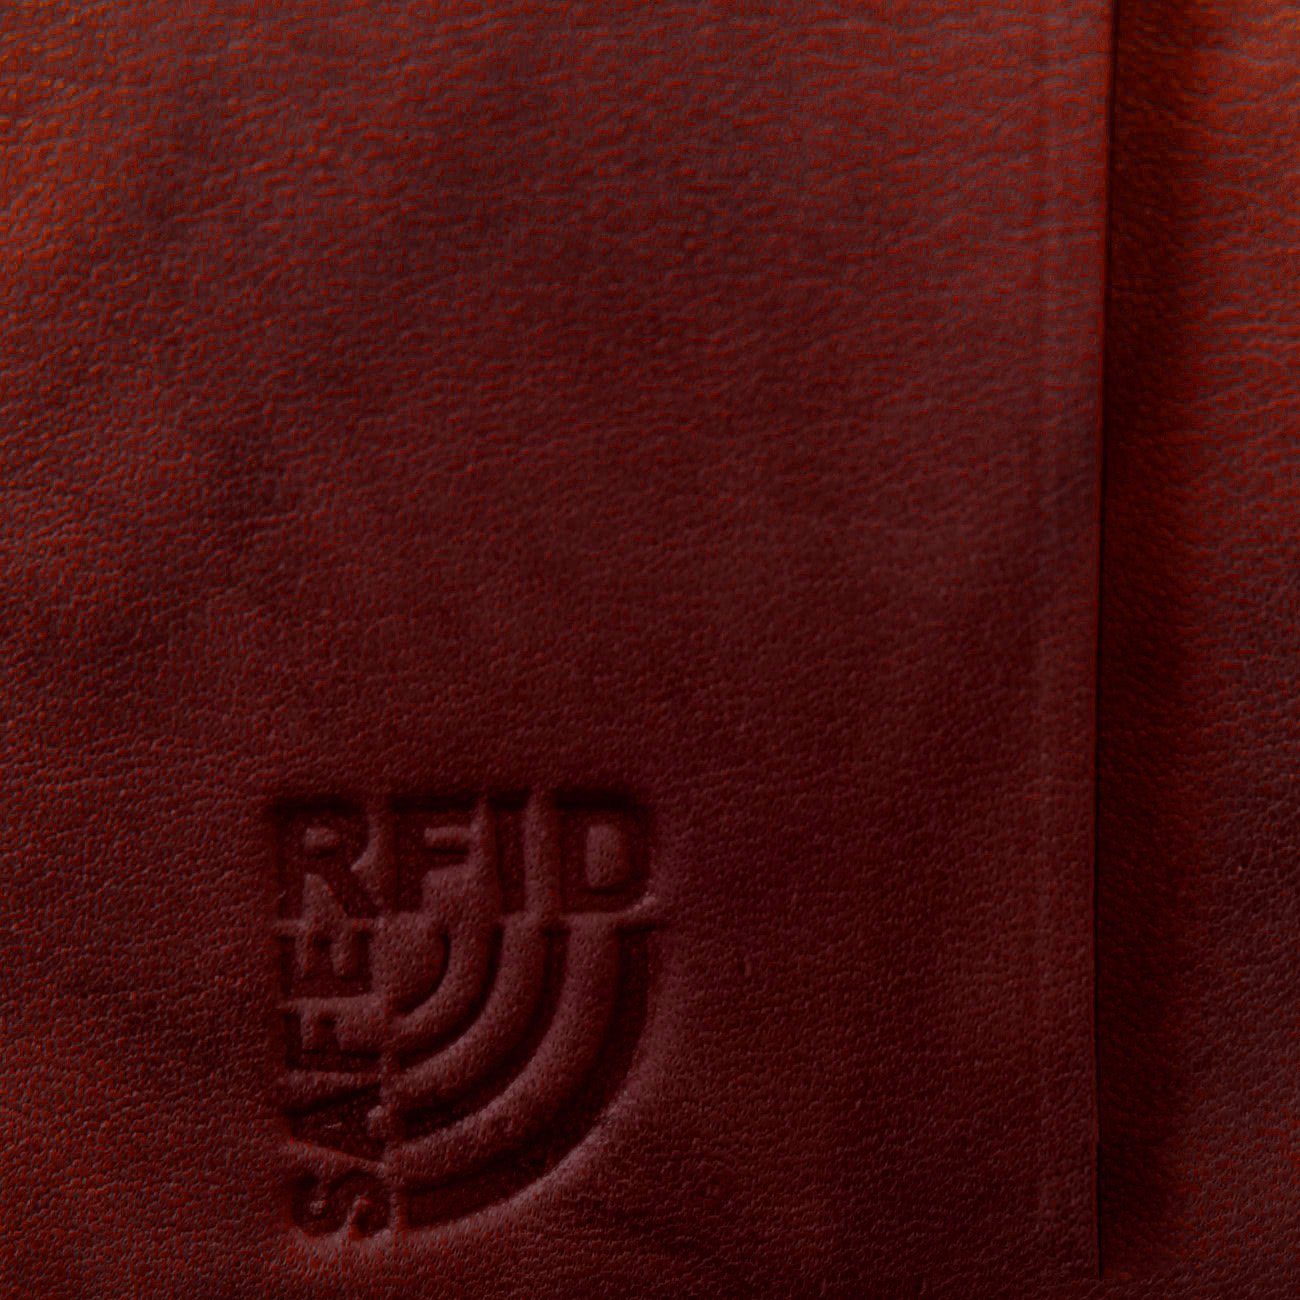 RFID 9cm, Börse rot Money Maker Damen Damen Größe Portemonnaie), Portemonnaie Echtleder (Portemonnaie, ca. Money Maker Geldbörse